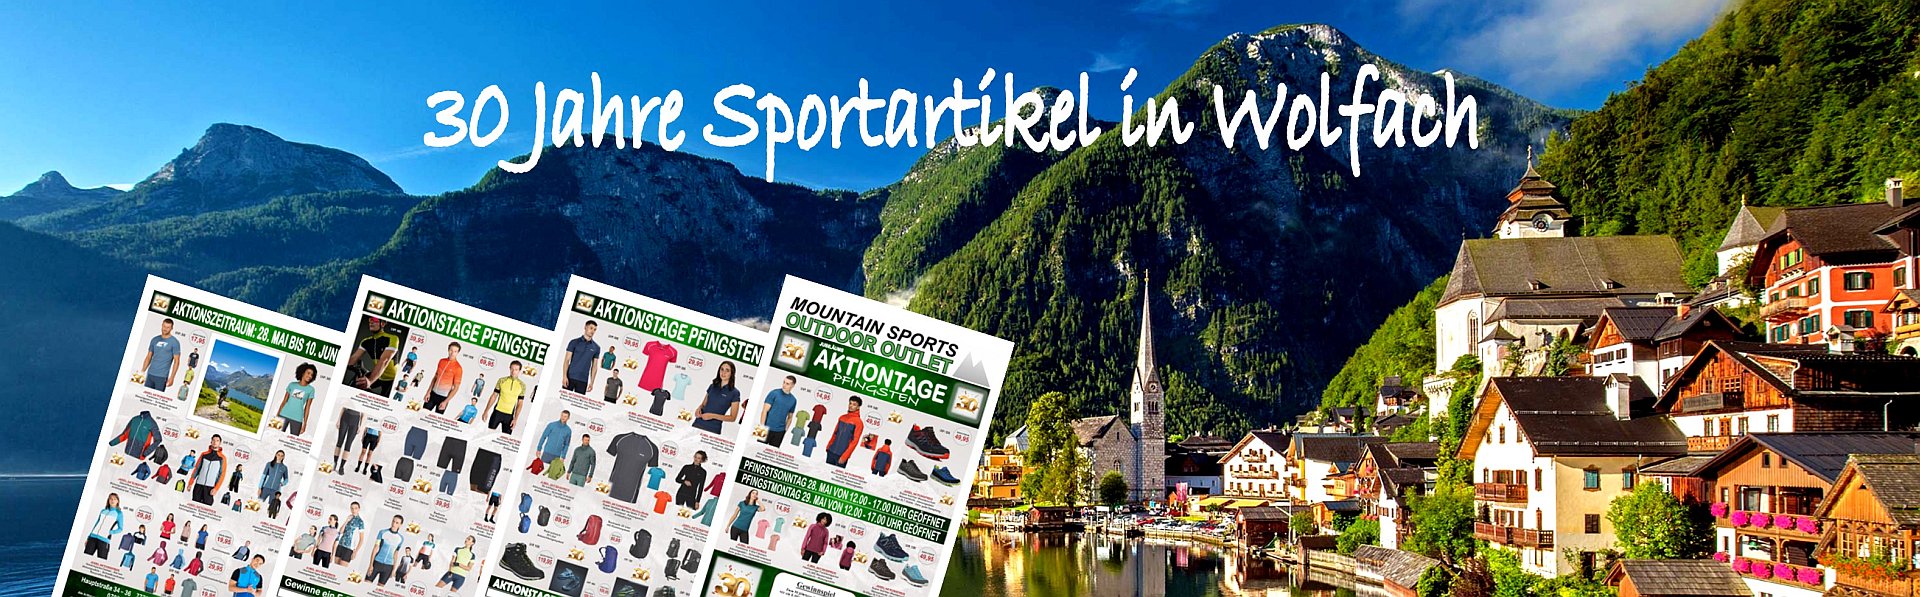 30 Jahre Sportartikel in Wolfach